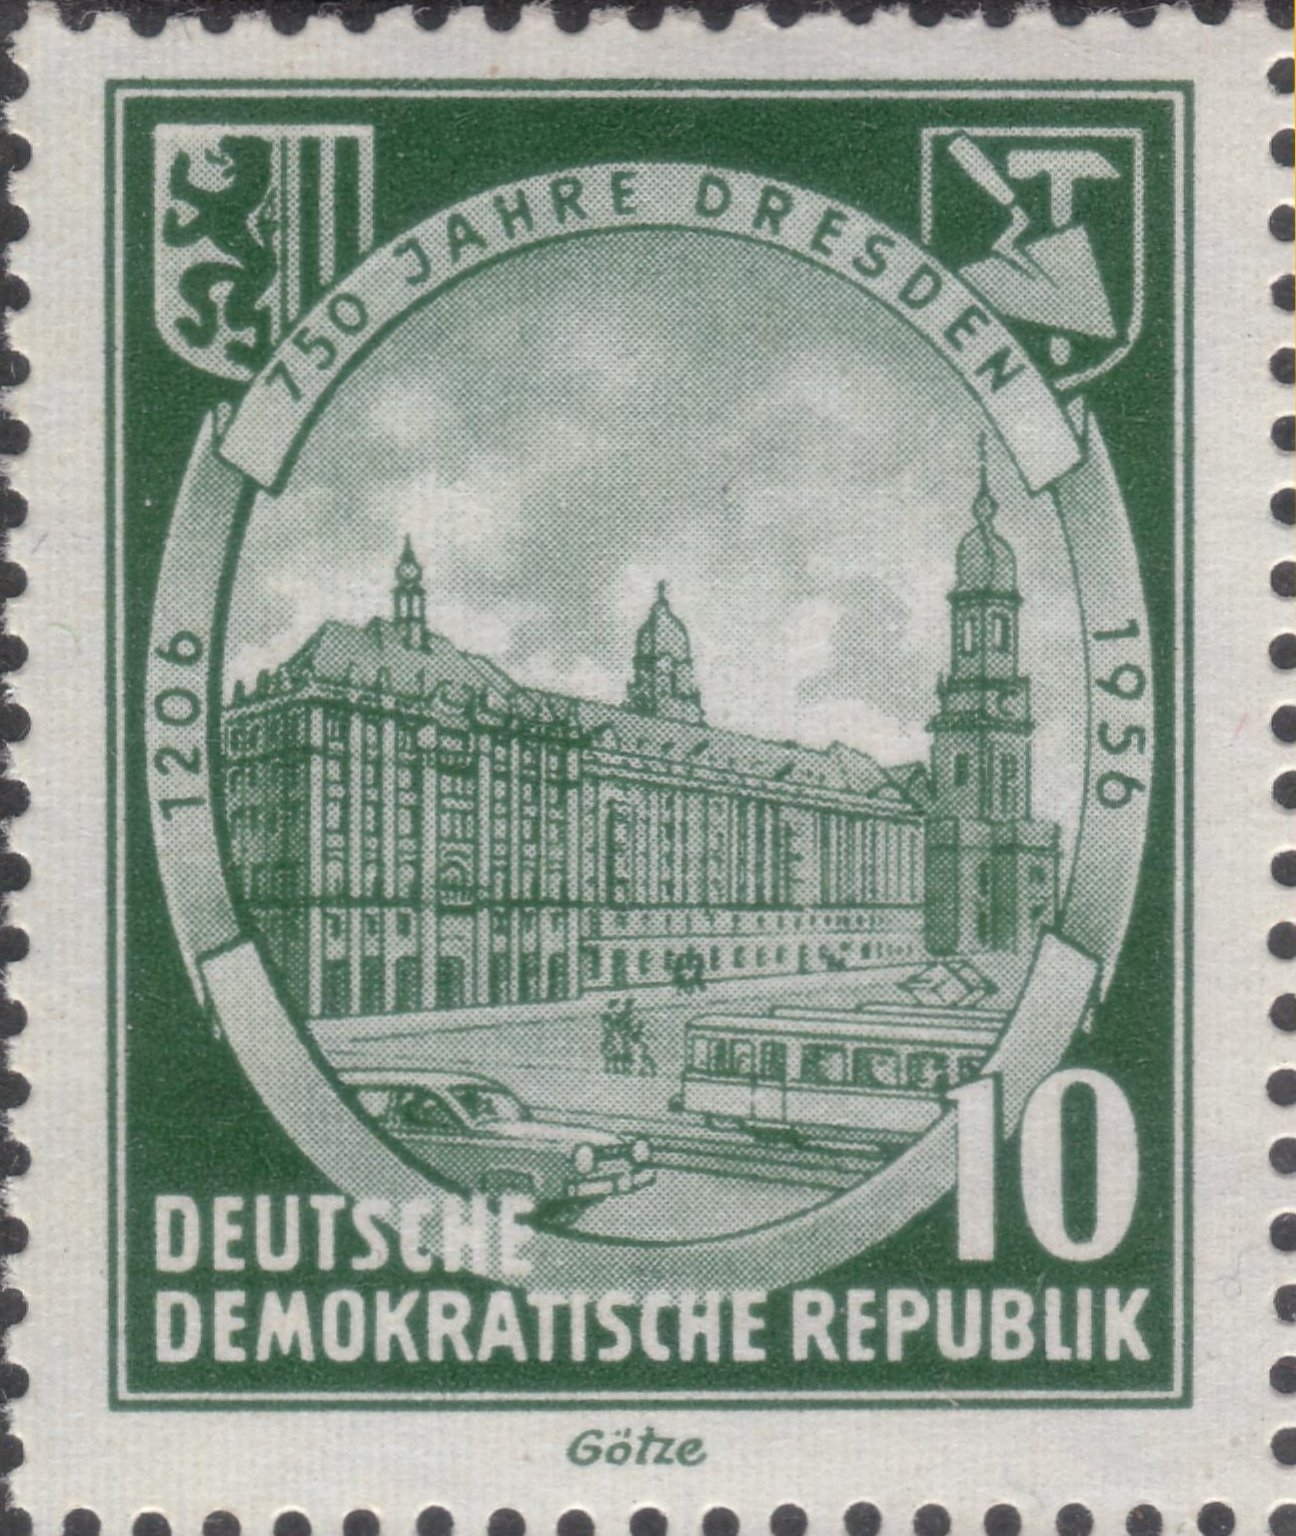 750 Jahre Dresden